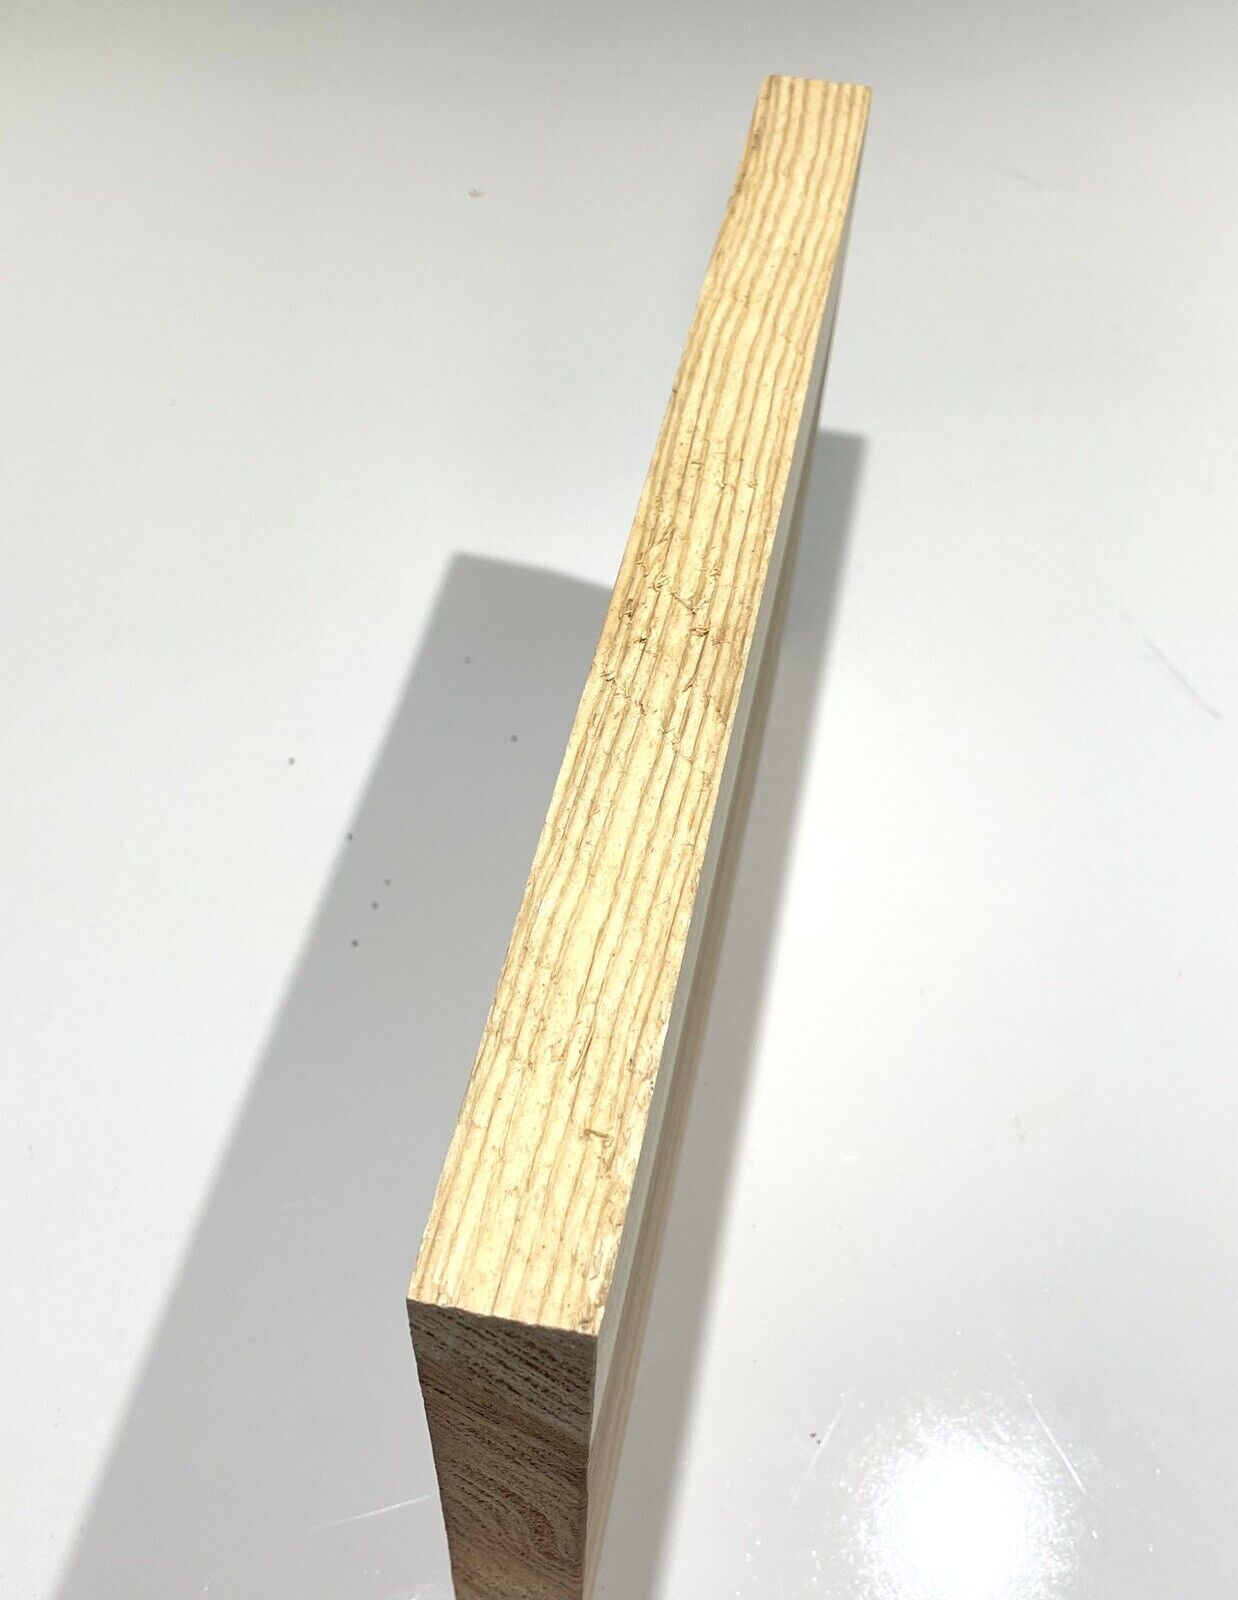 Japanese Cedar / Sugi wood craft Board 22 x 7-3/4 x 1 (w57) Low